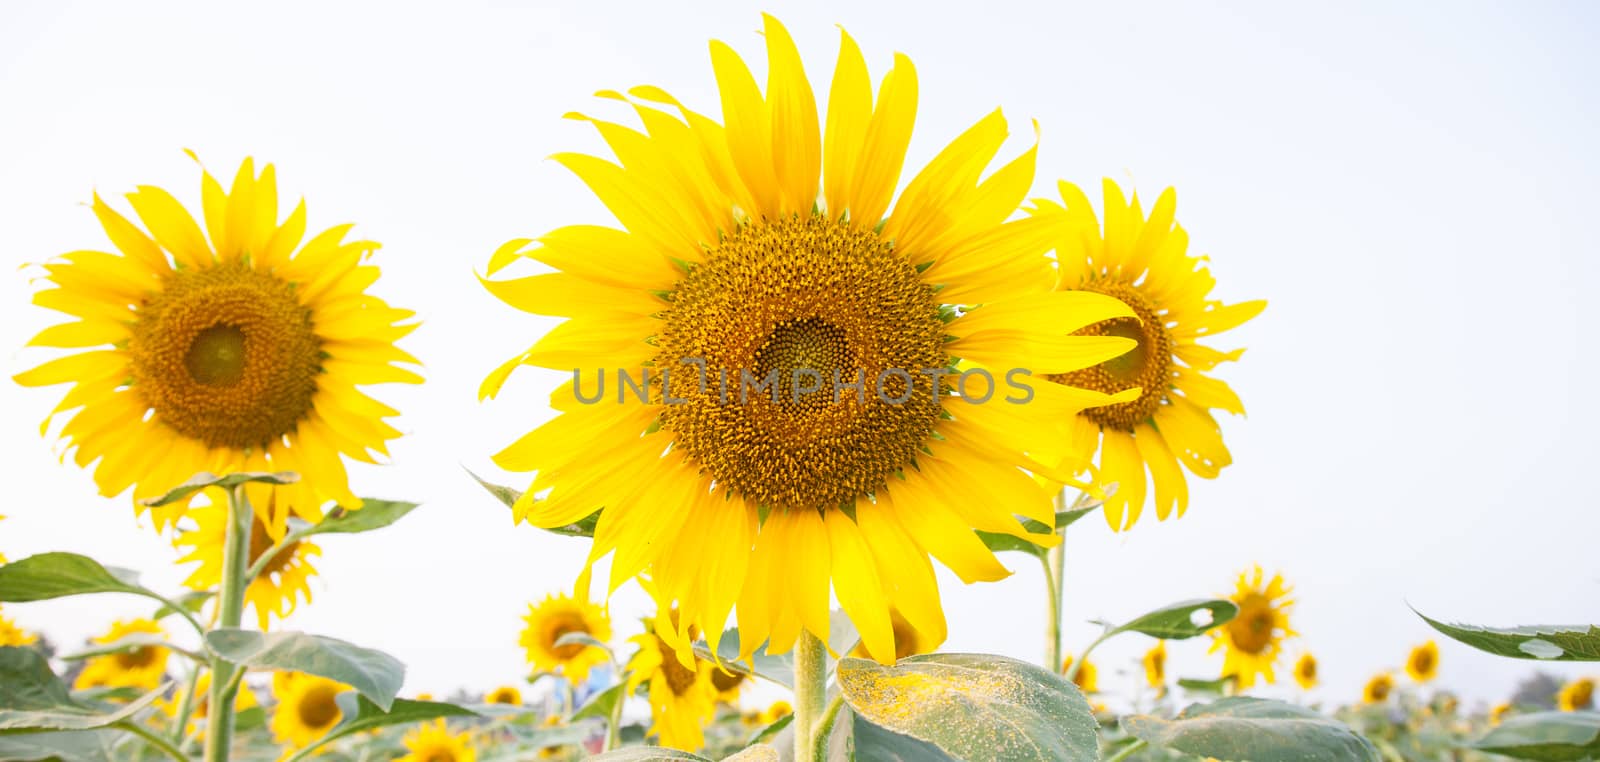 Sunflower in sunflower field by a454